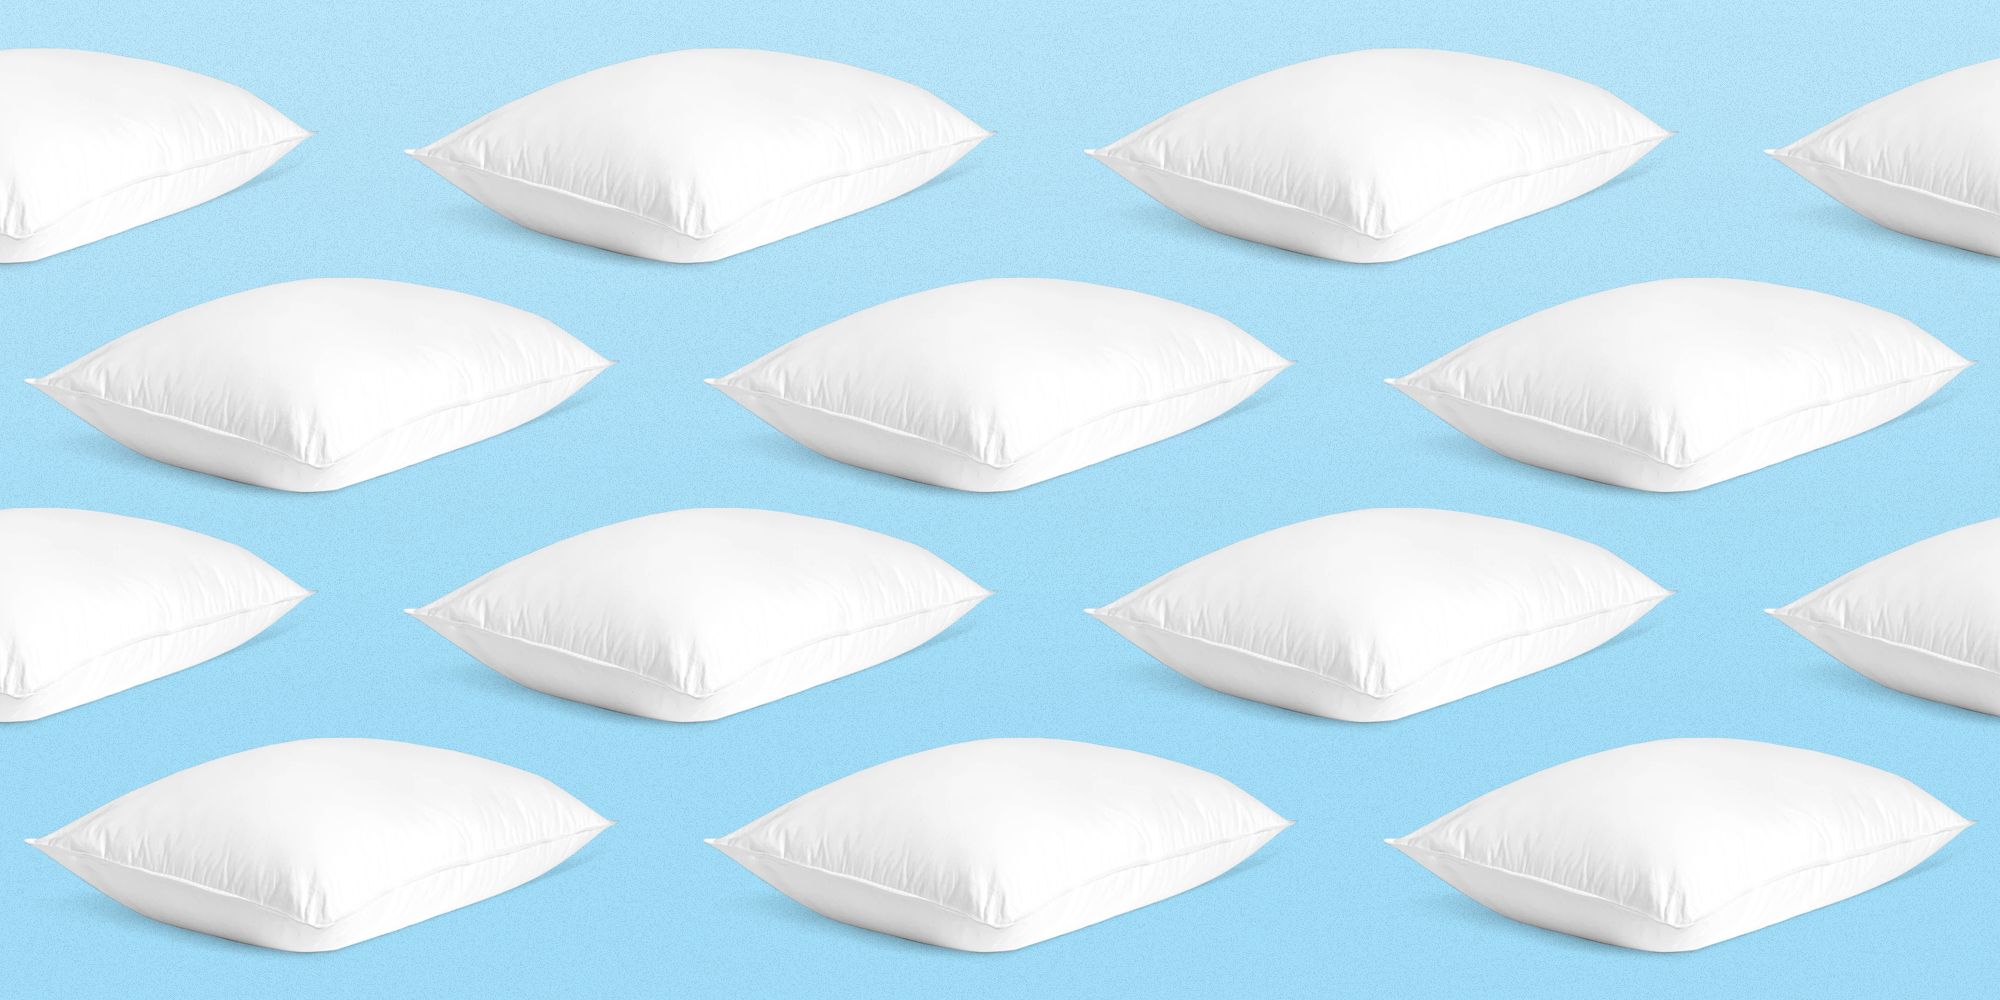 best budget memory foam pillow